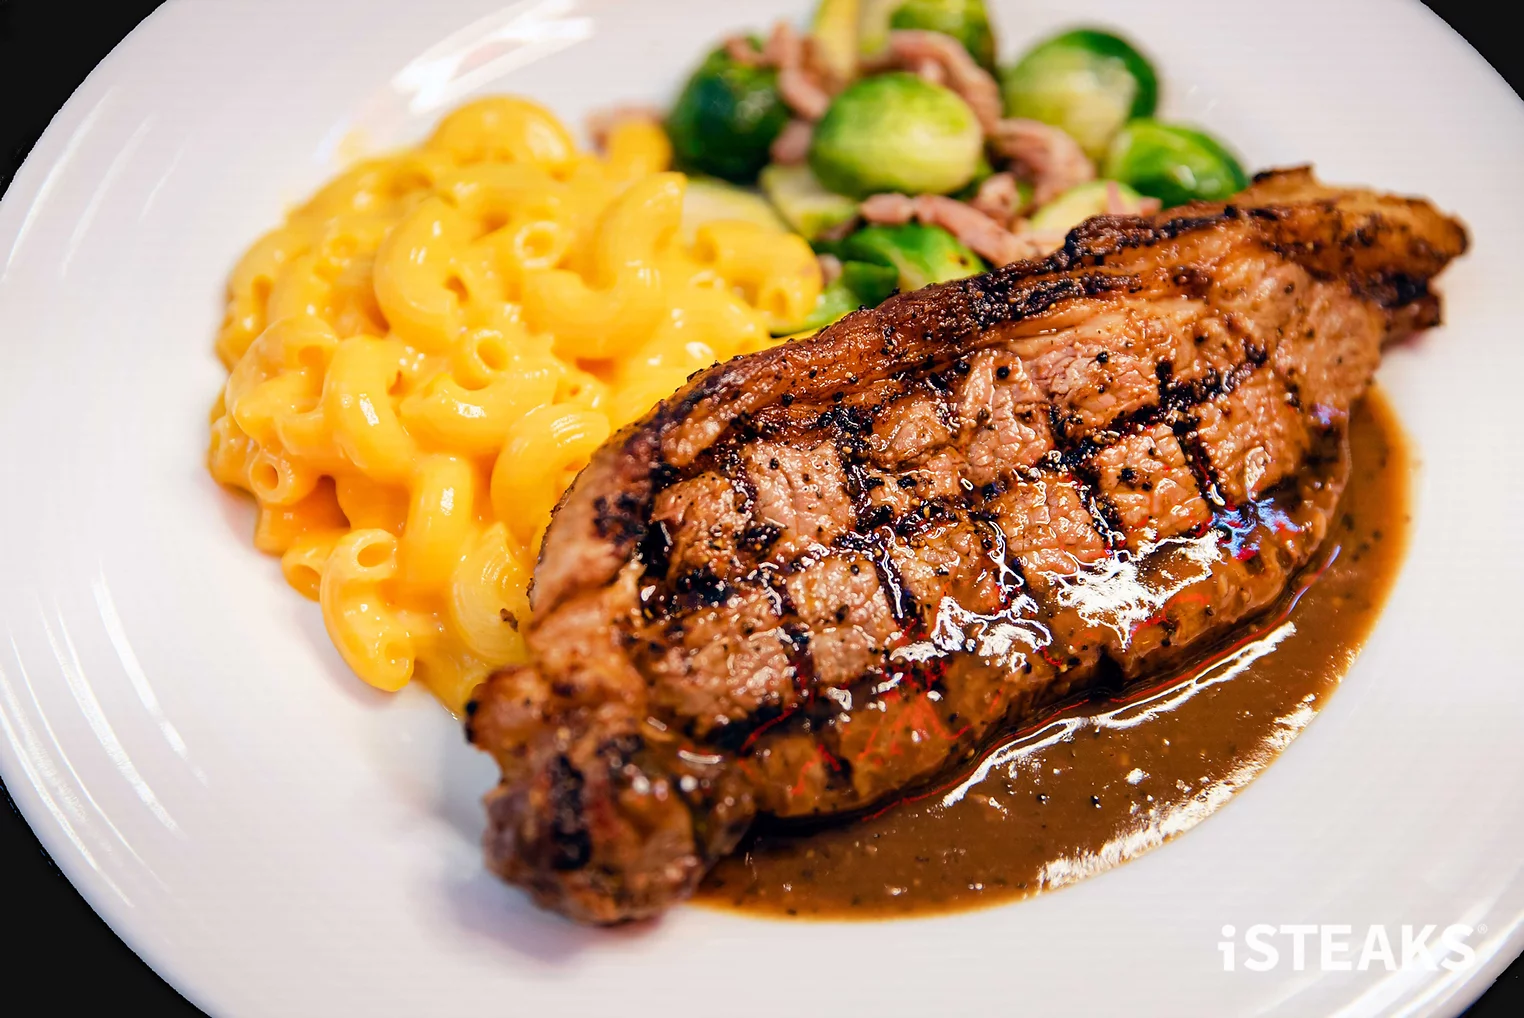 Affordable restaurants - iSTEAKS' steak